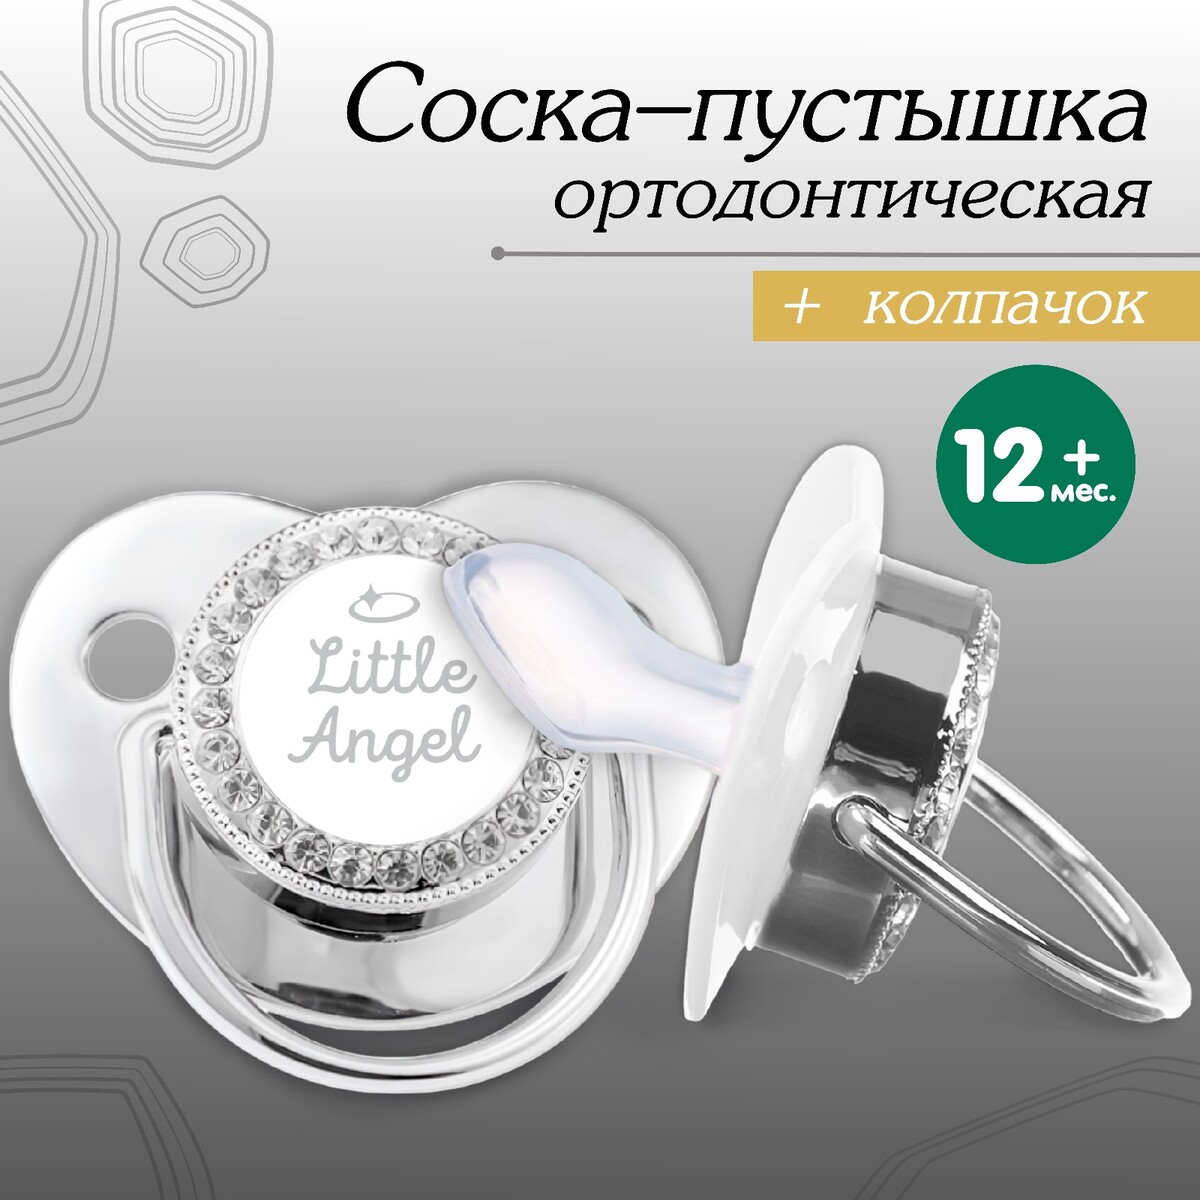 Соска - пустышка ортодонтическая, little angel, с колпачком, +12мес., серебряная, стразы отто серебряная рука